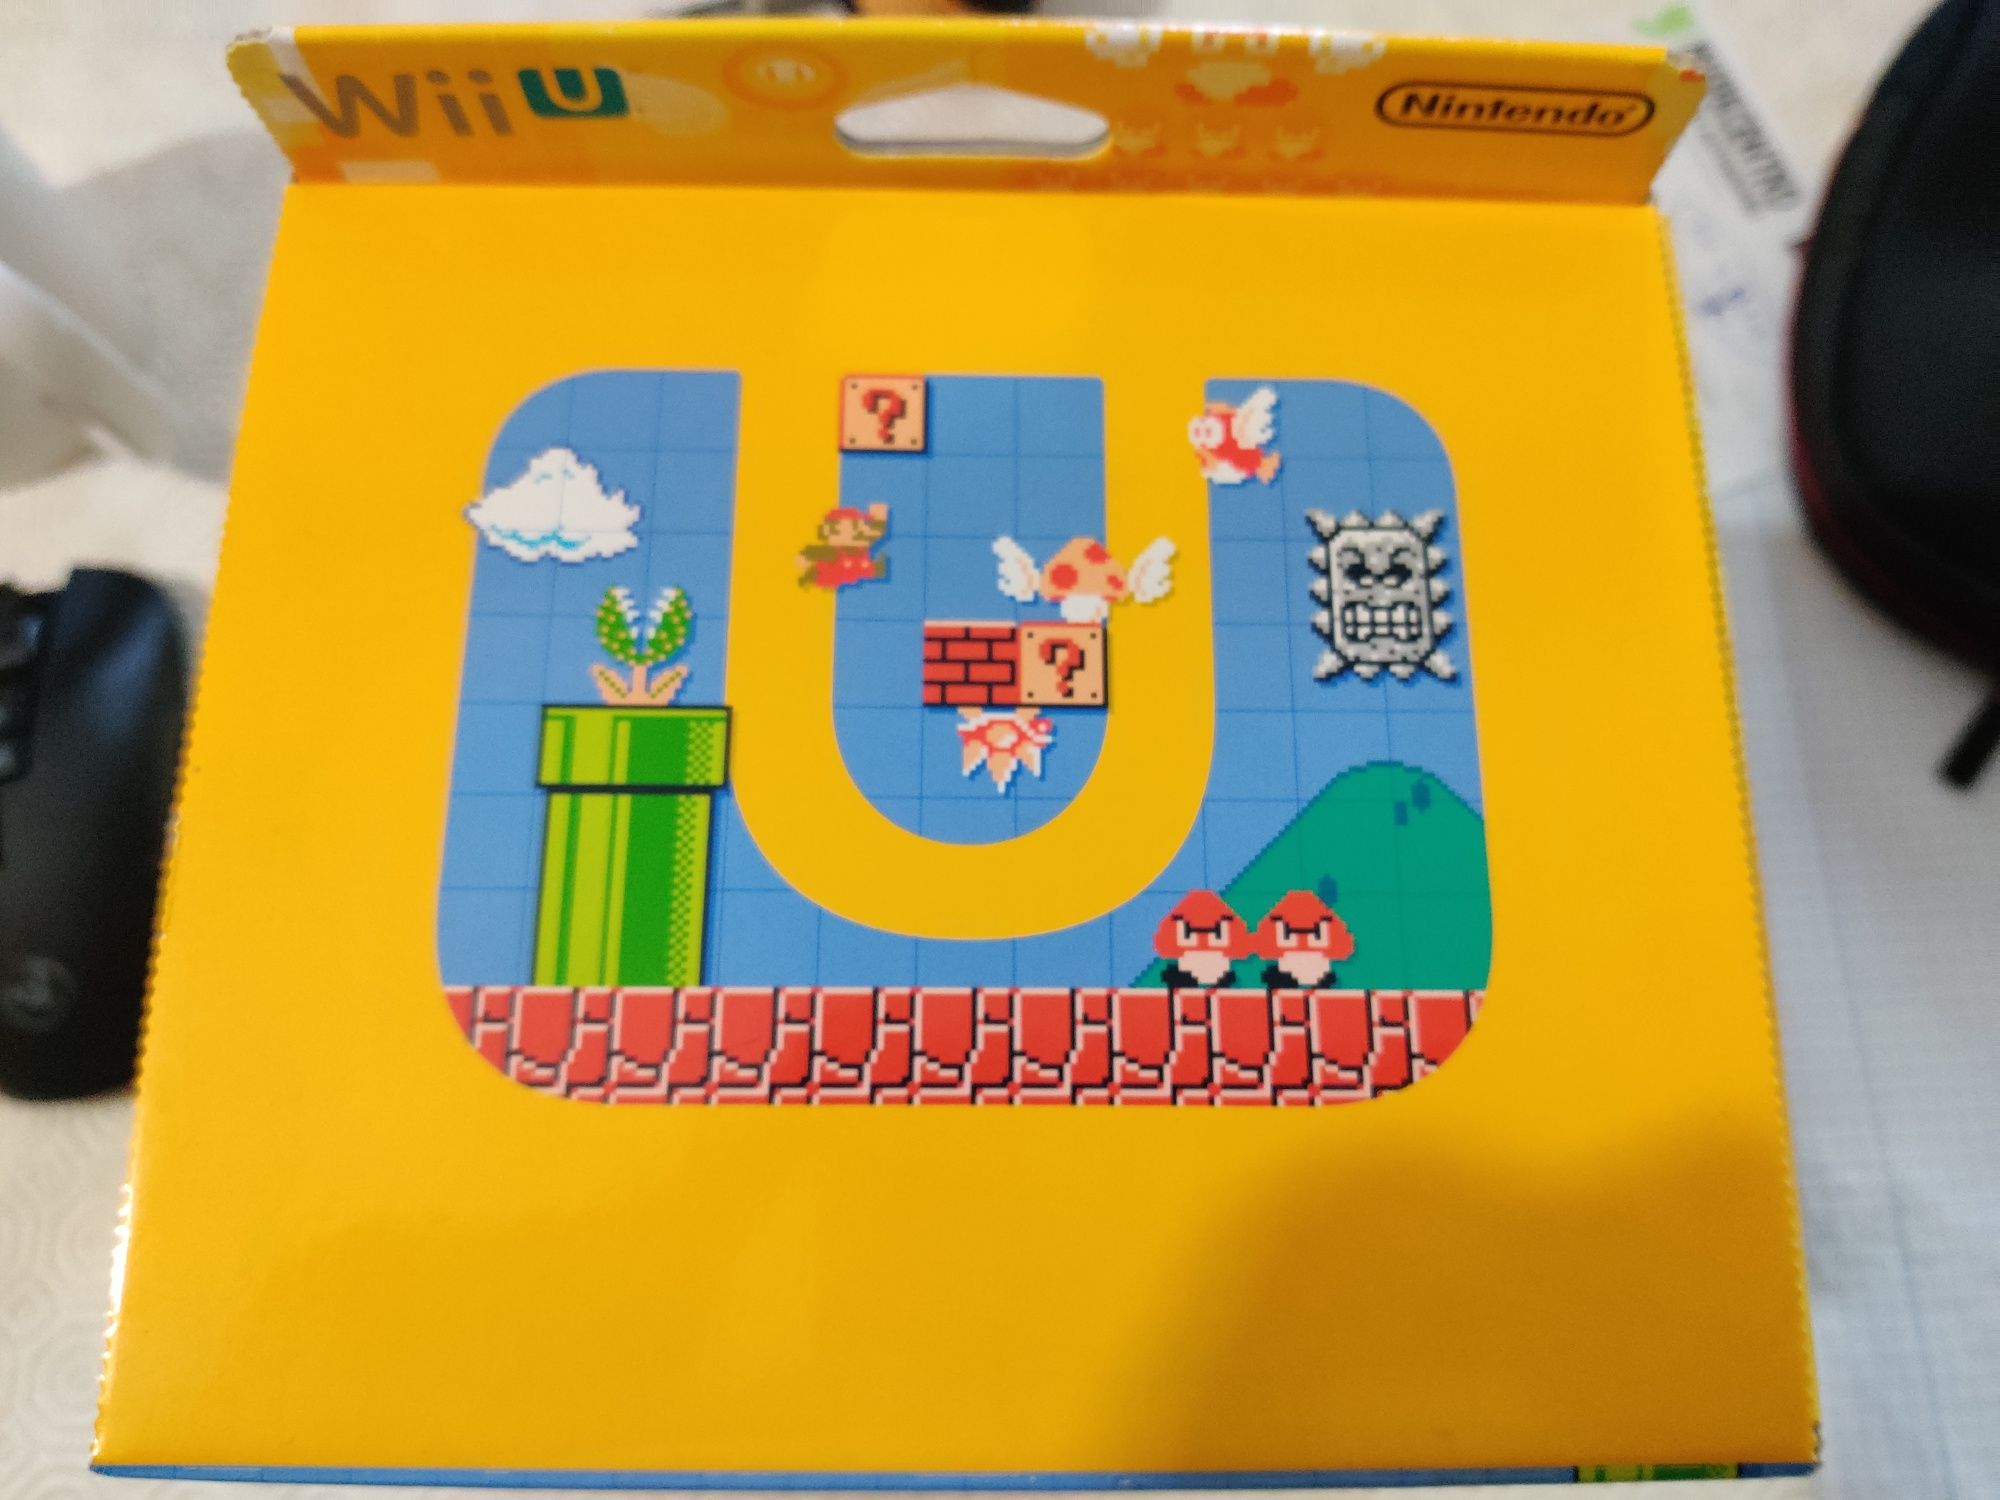 Super Mario maker Wii U novo Nintendo amiibo edição de 30 anos